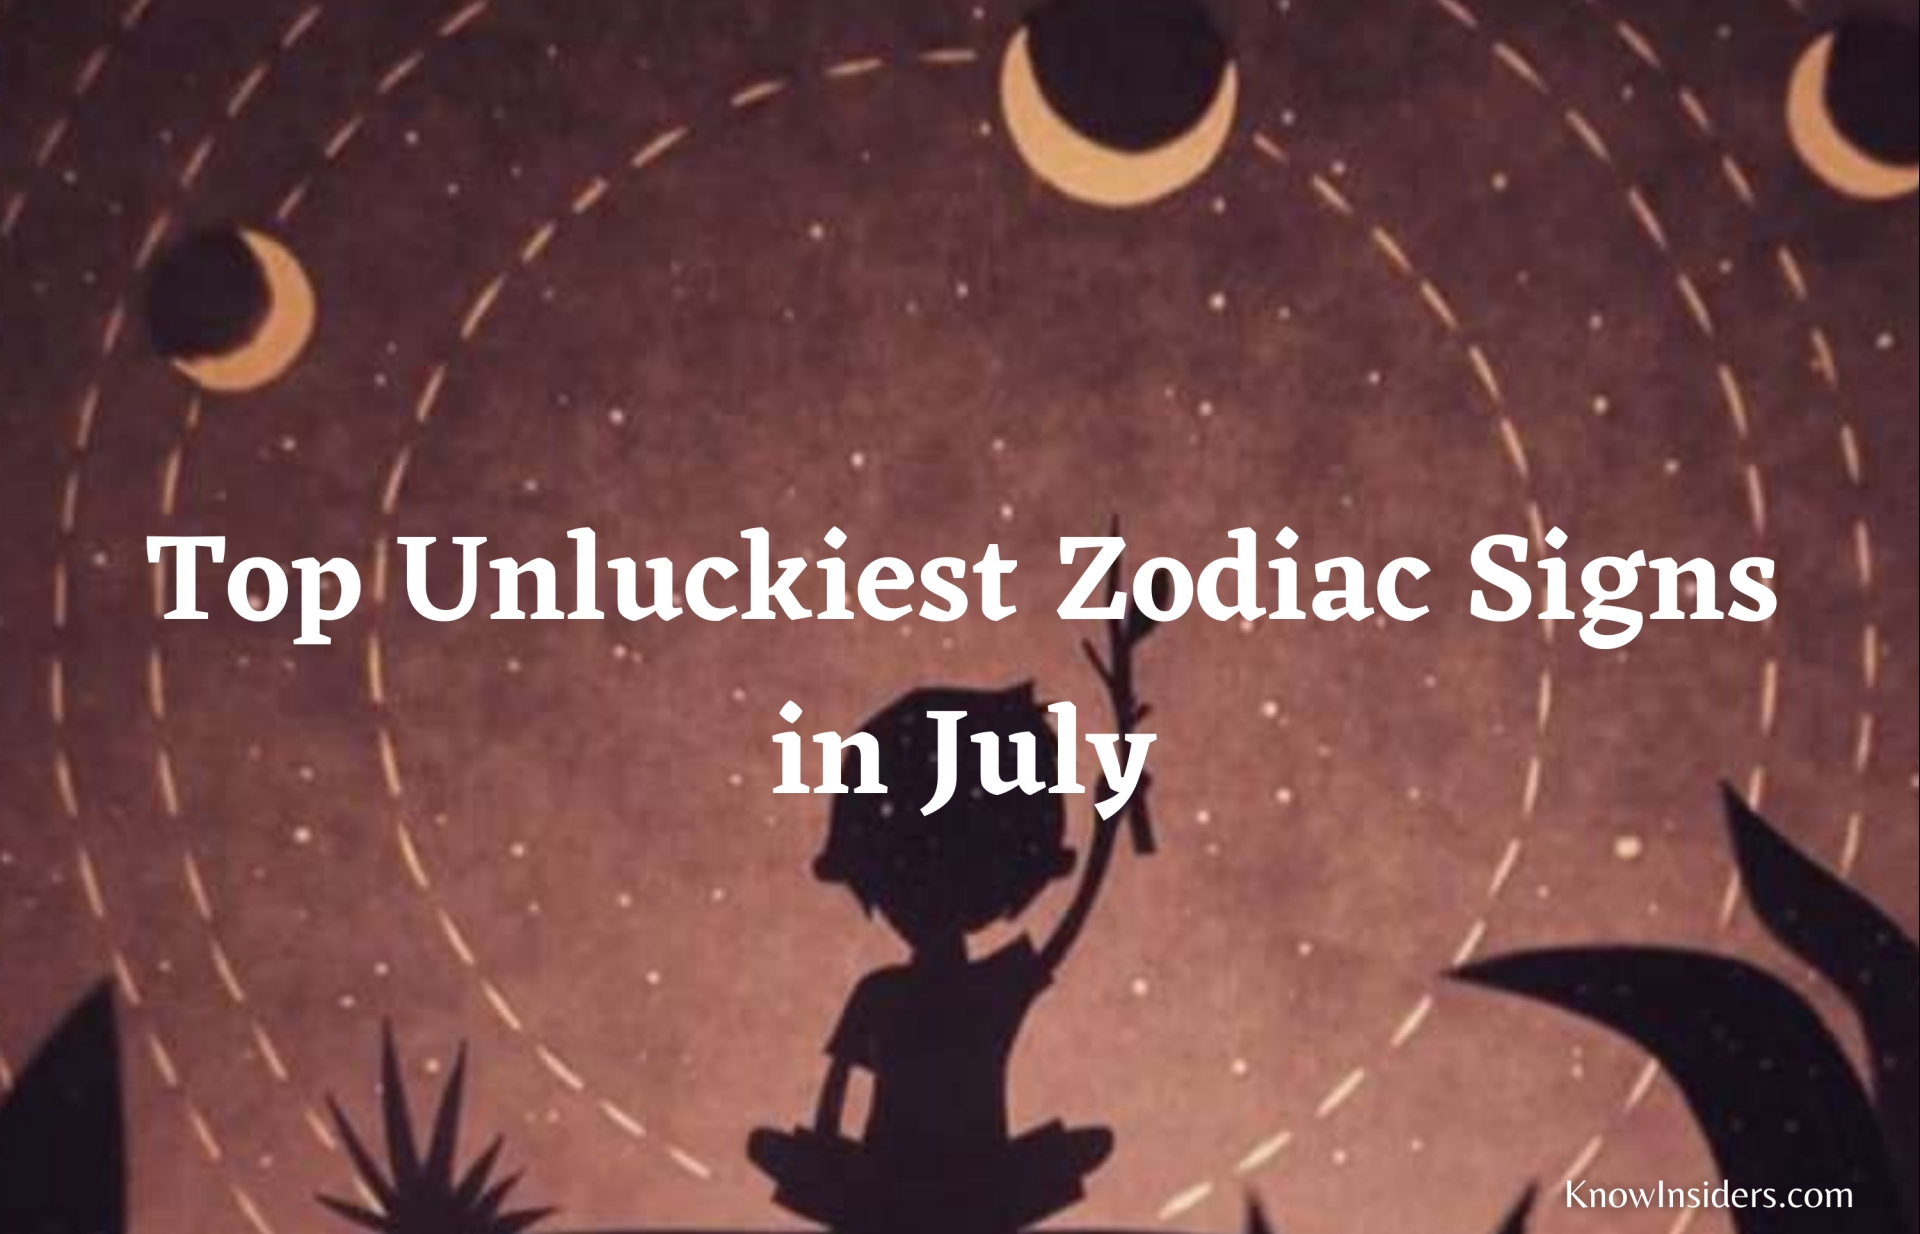 3 Unluckiest Zodiac Signs in July